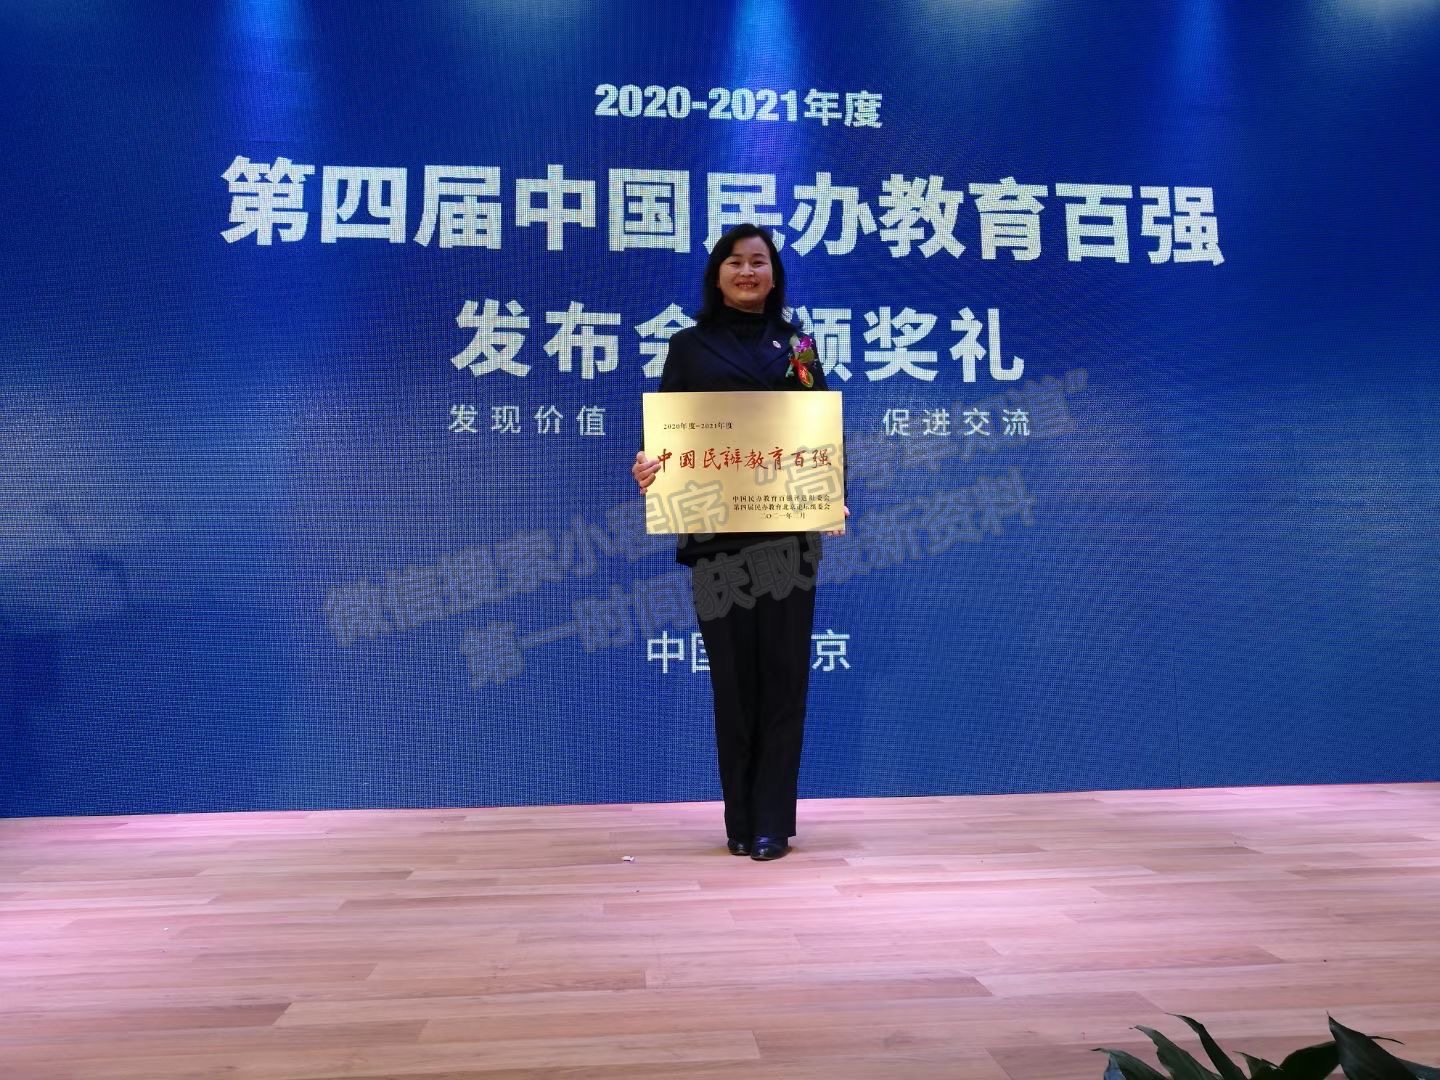 湖北商贸学院荣获2020-2021年度“中国民办教育百强” 荣誉称号